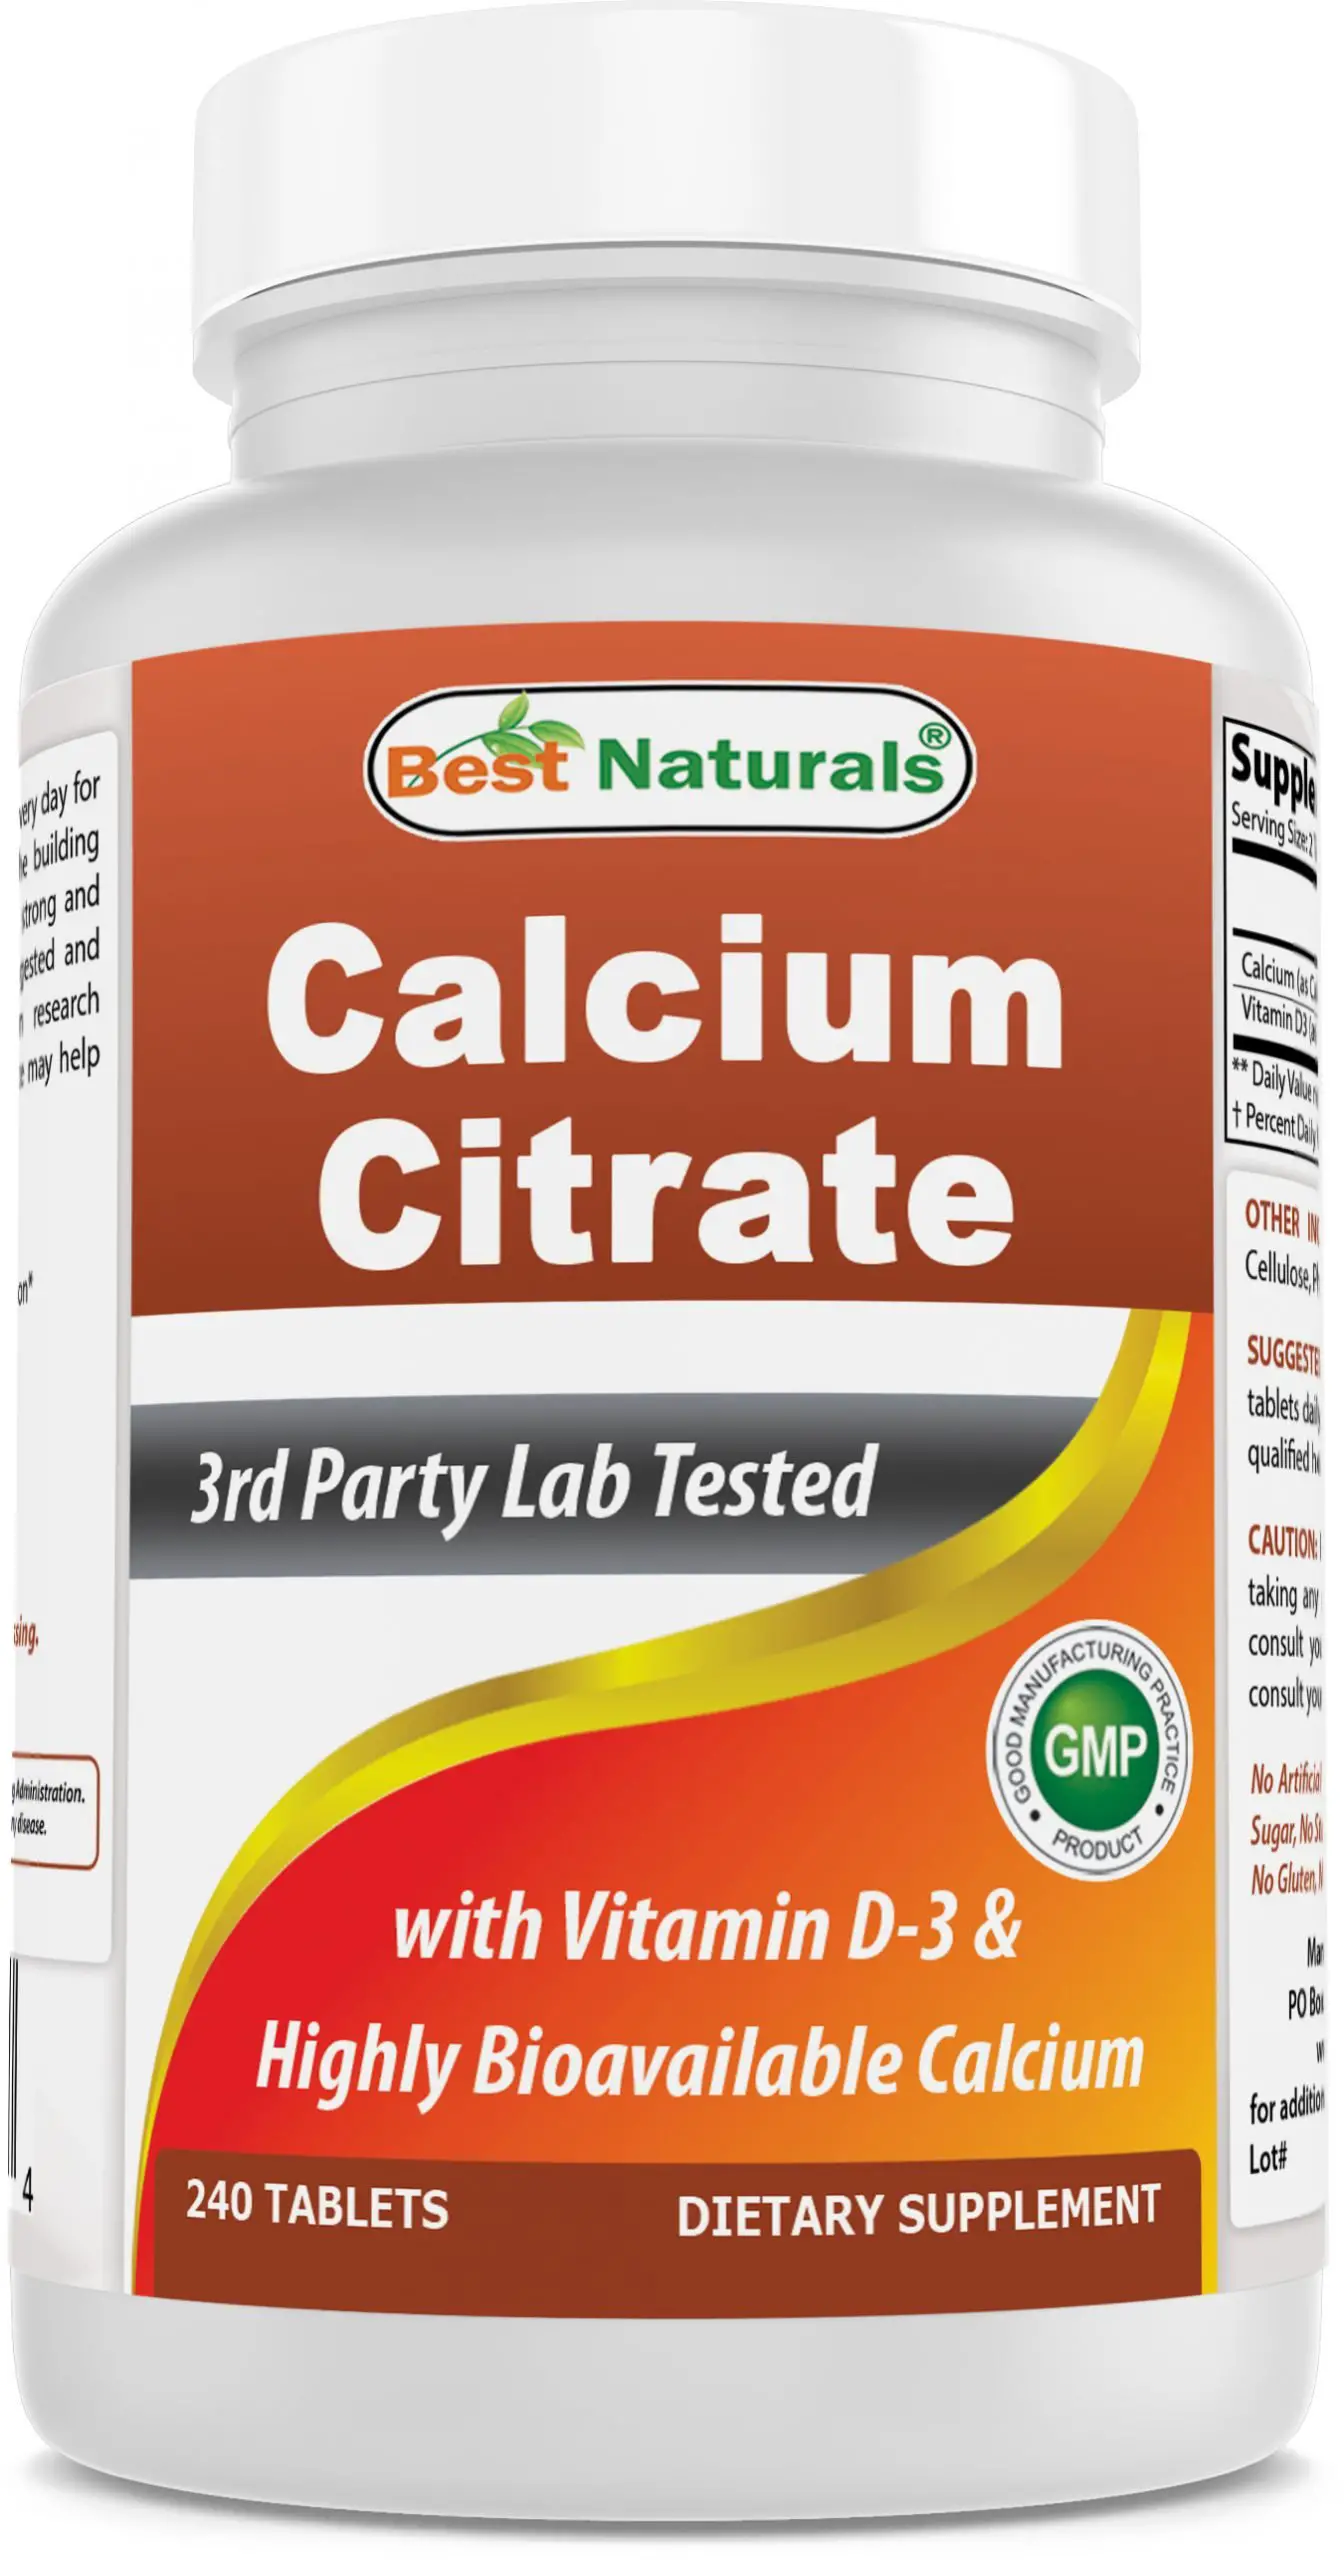 Best Naturals Calcium Citrate with Vitamin D